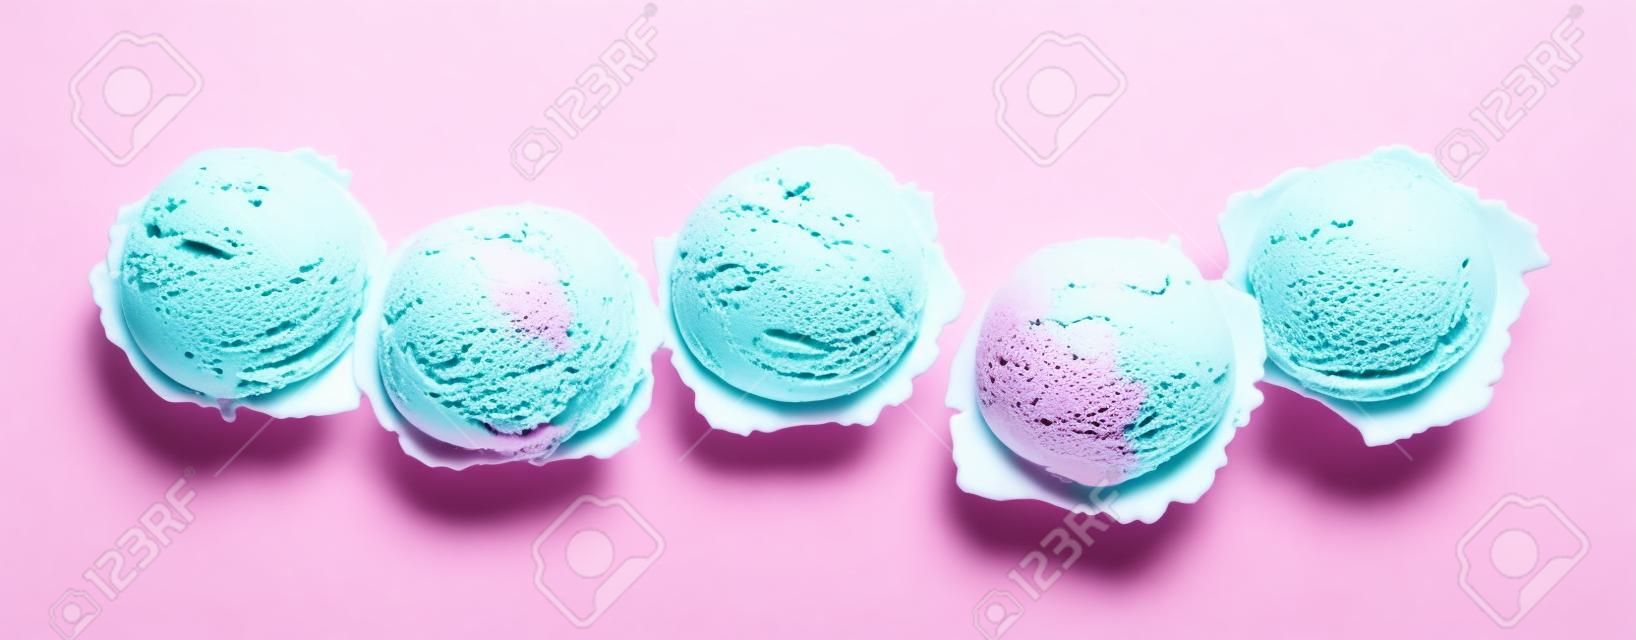 High Angle Натюрморт Вид Пять совкамих Красочного и Refreshingly Прохладного мороженого перед белым фоном